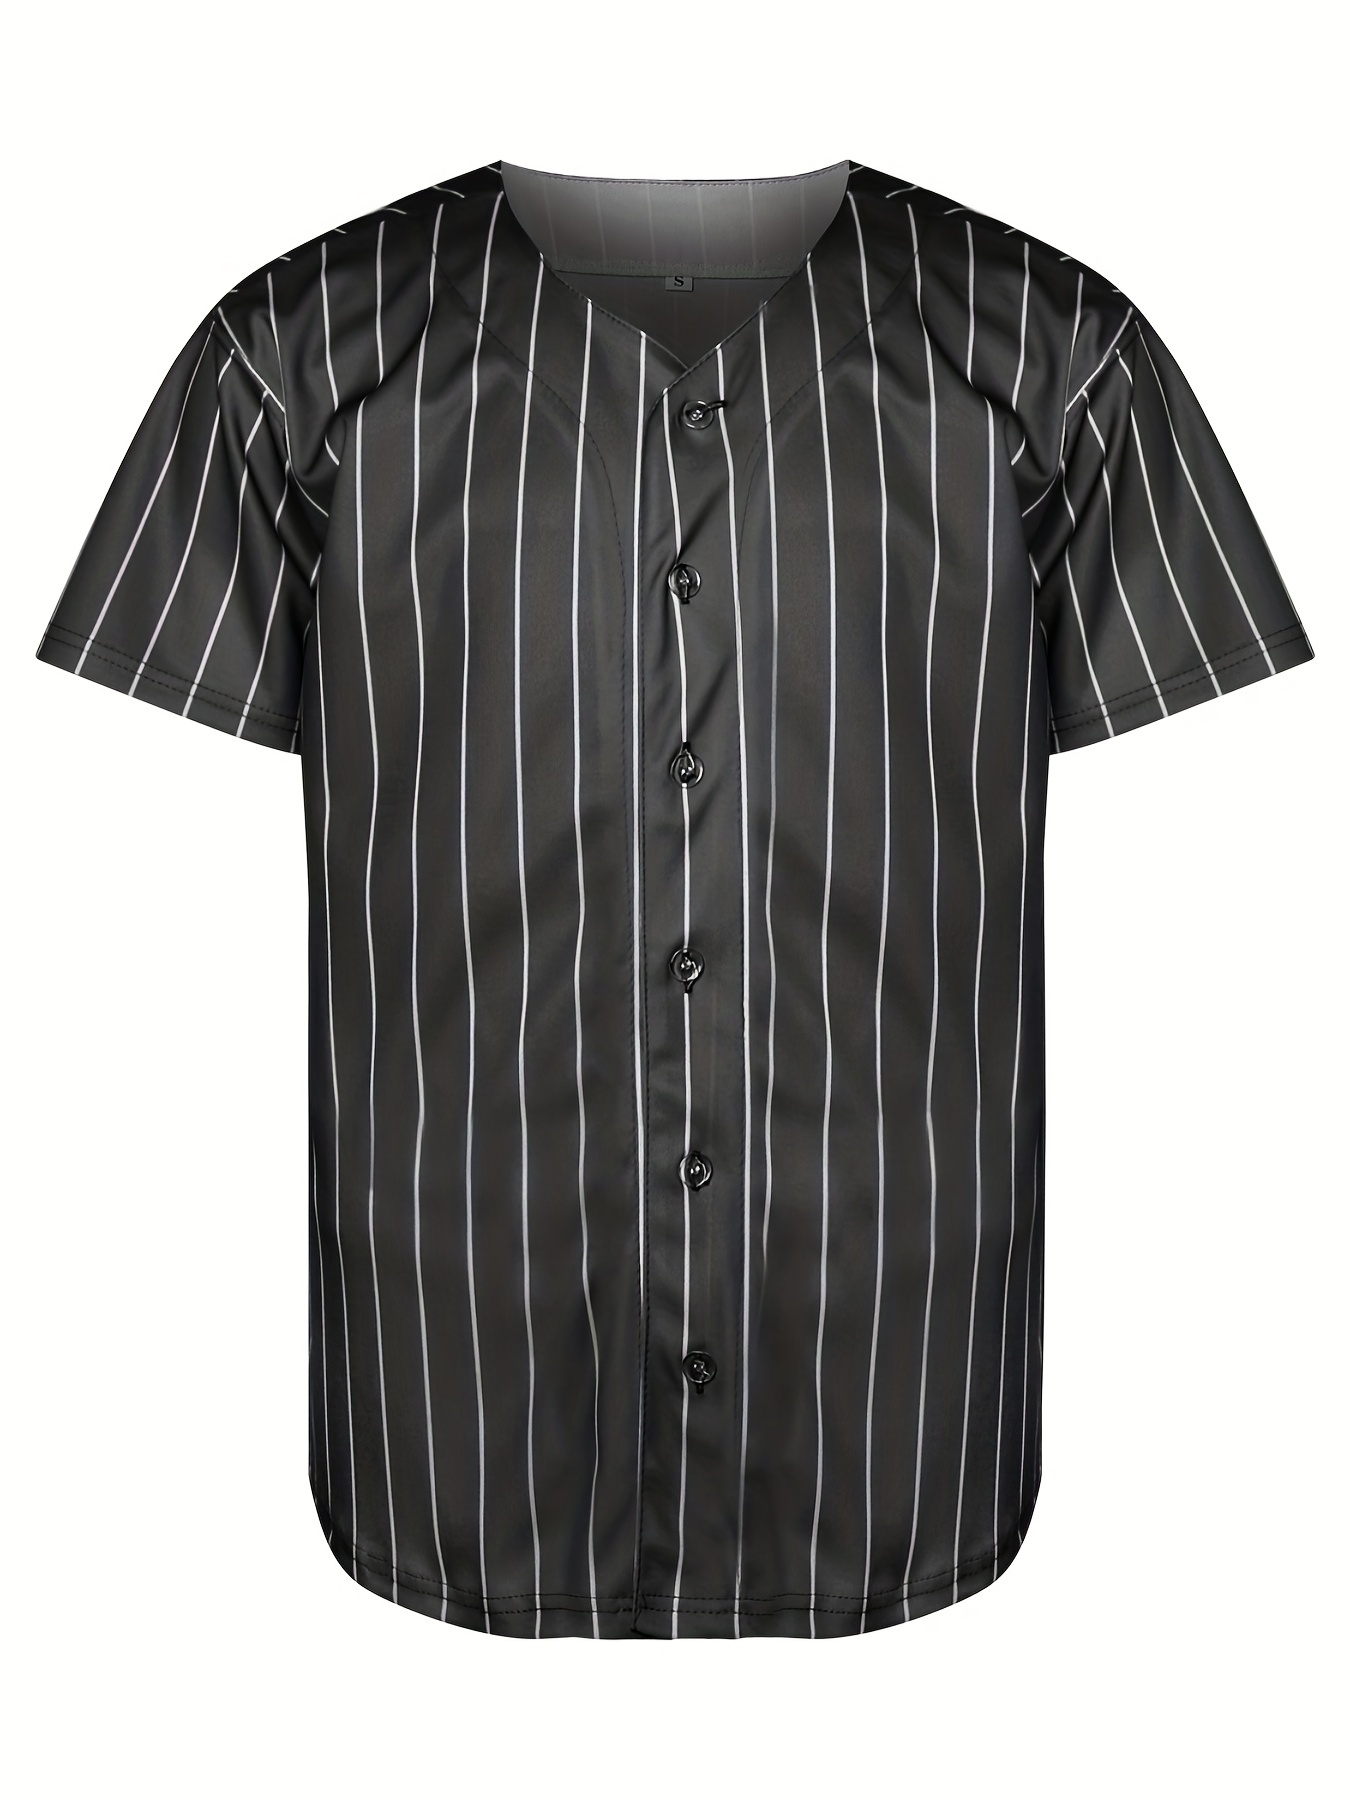 Custom Baseball Jersey Men Pinstripe Personalized Baseball Button Down  Shirts Stitched Women Youth Kids Sports Uniform